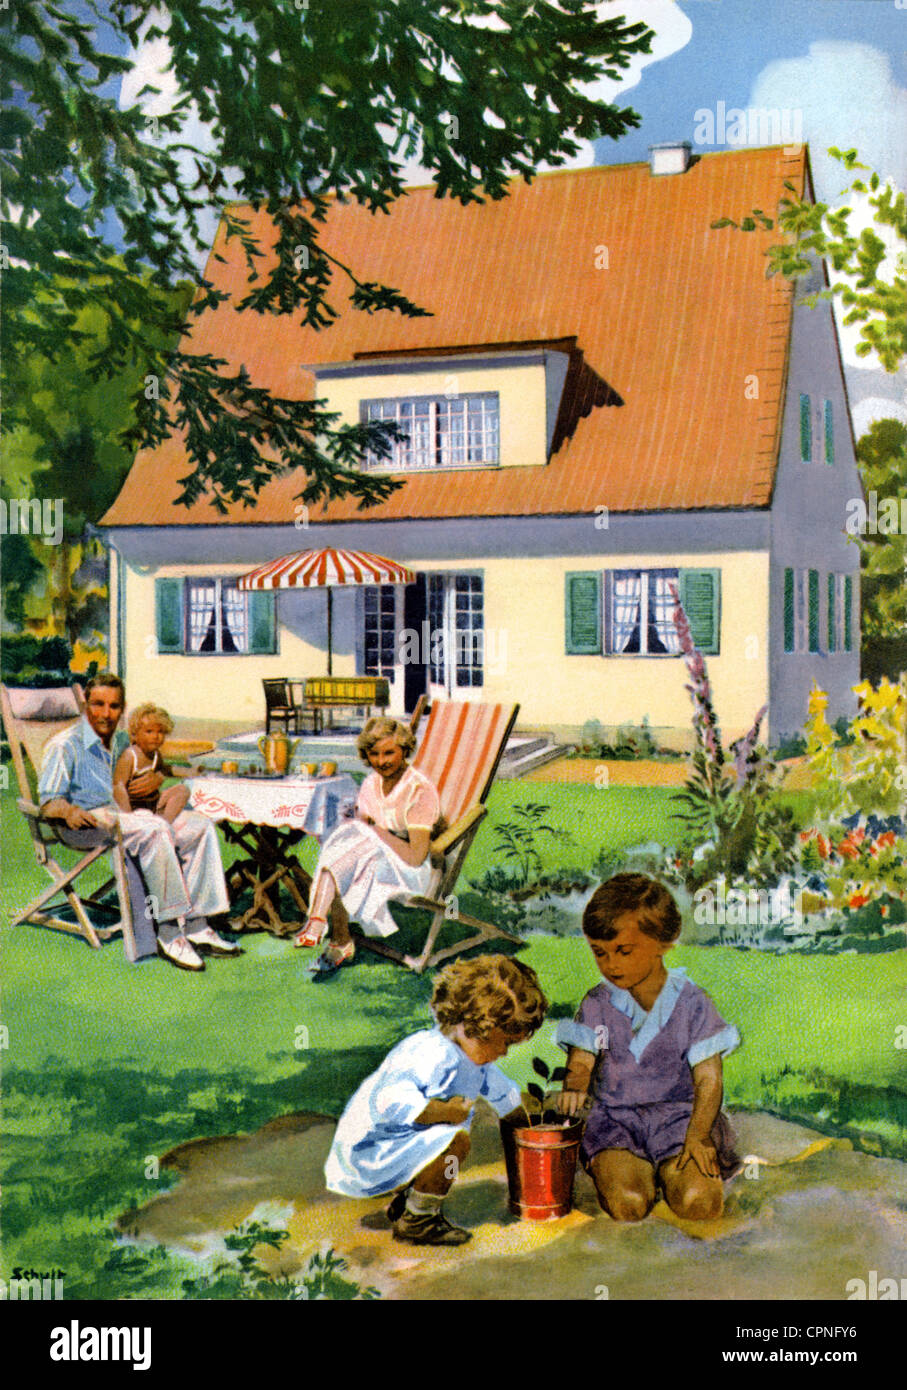 Habitation, maison, famille, jouer des enfants, dans le jardin, Allemagne, vers 1932, droits additionnels-Clearences-non disponible Banque D'Images